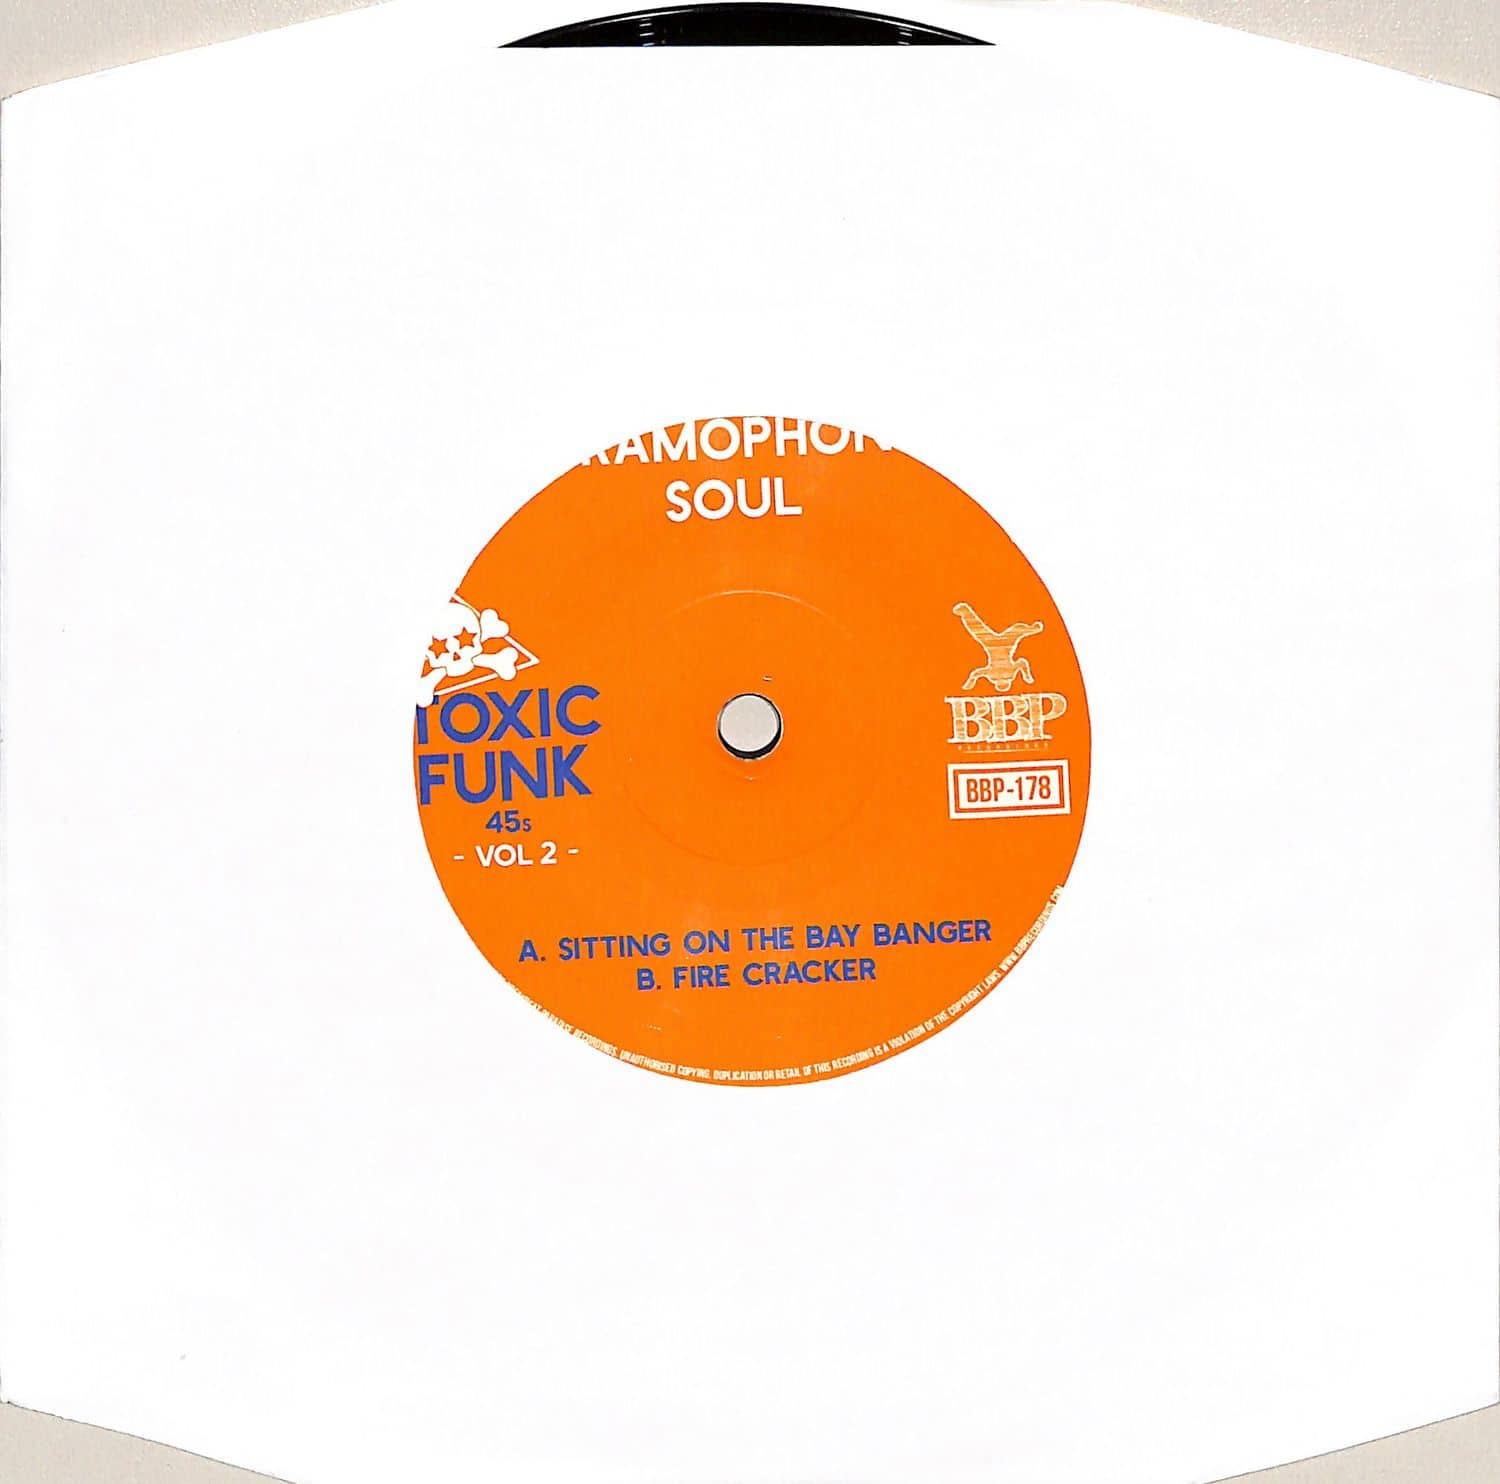 Gramophone Soul - TOXIC FUNK VOL. 2 